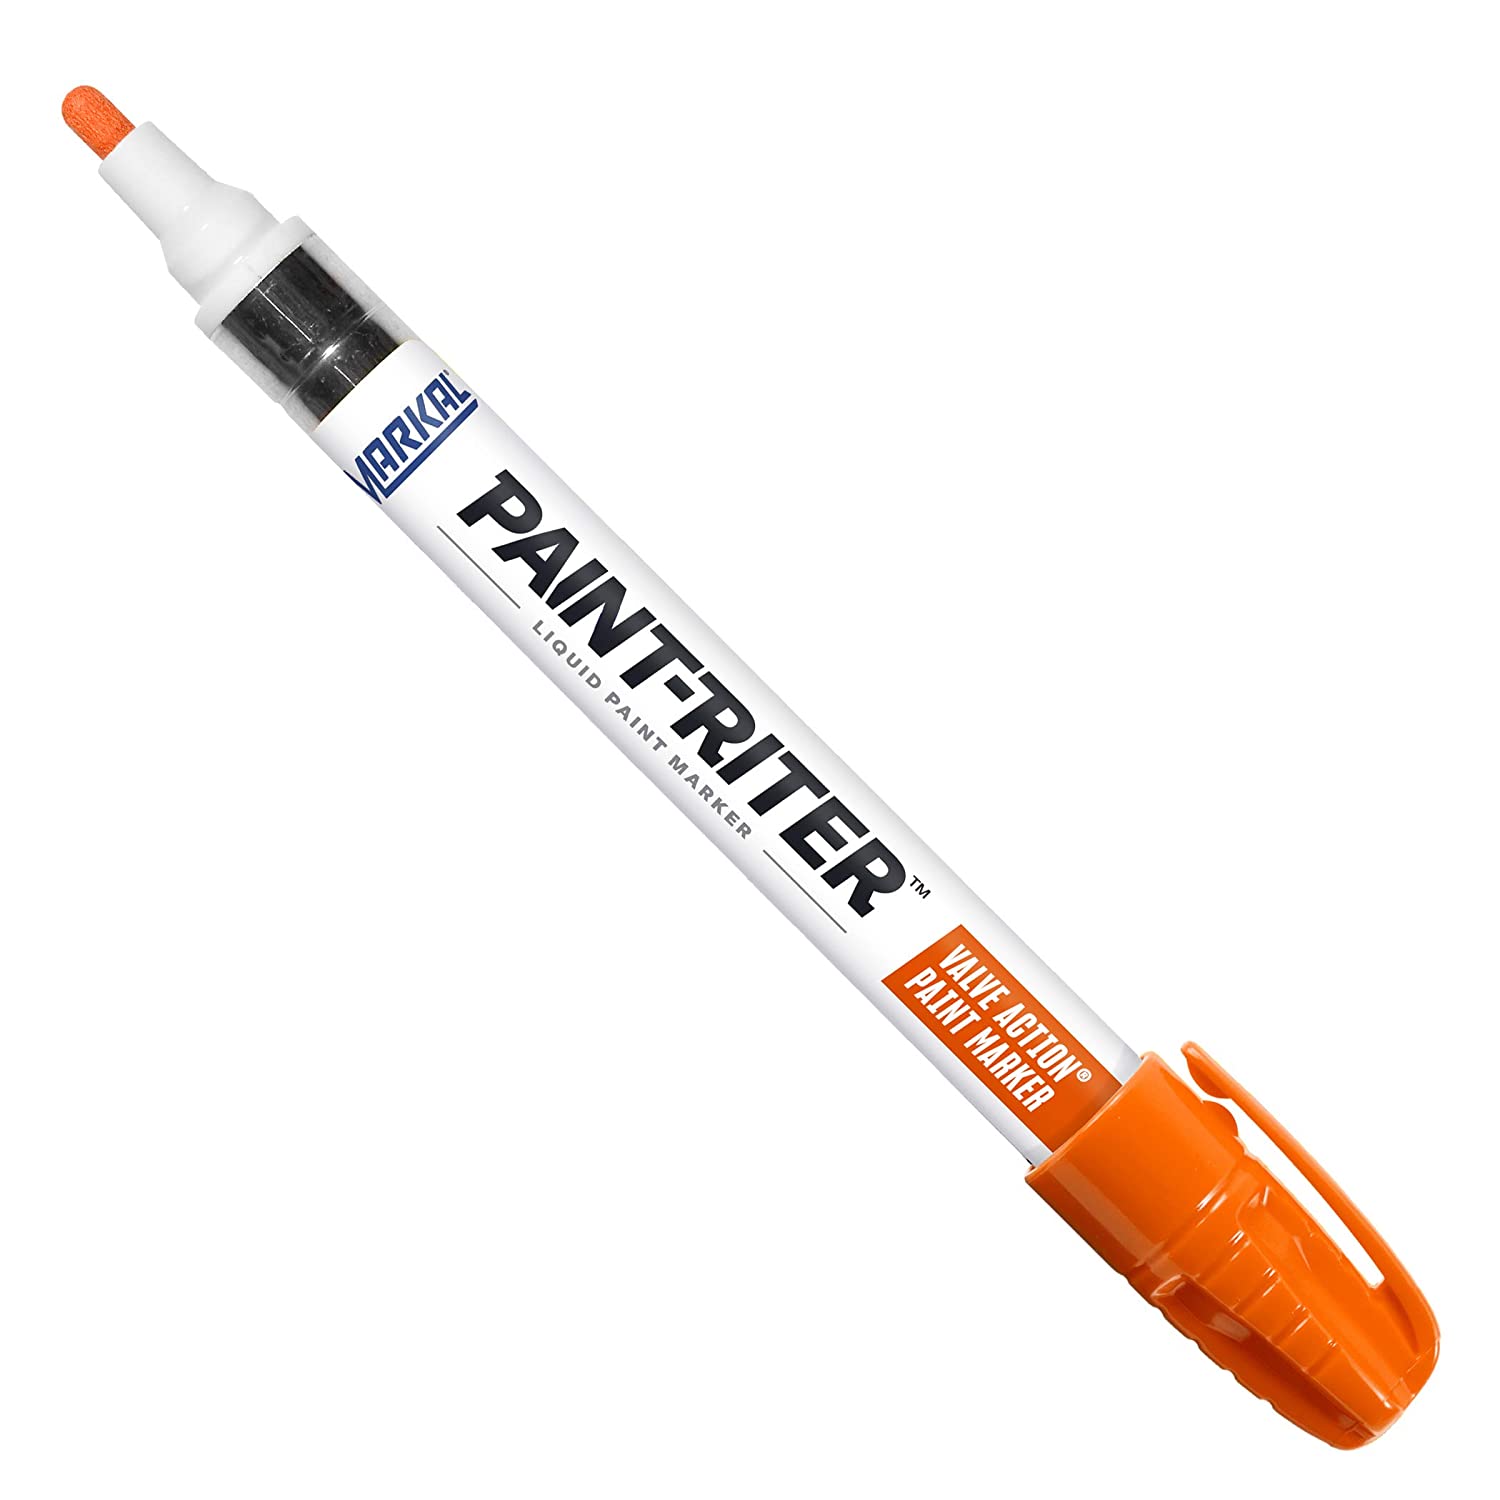 Markal 96824 Valve Action Paint Marker with 1/8" Bullet Tip, Orange